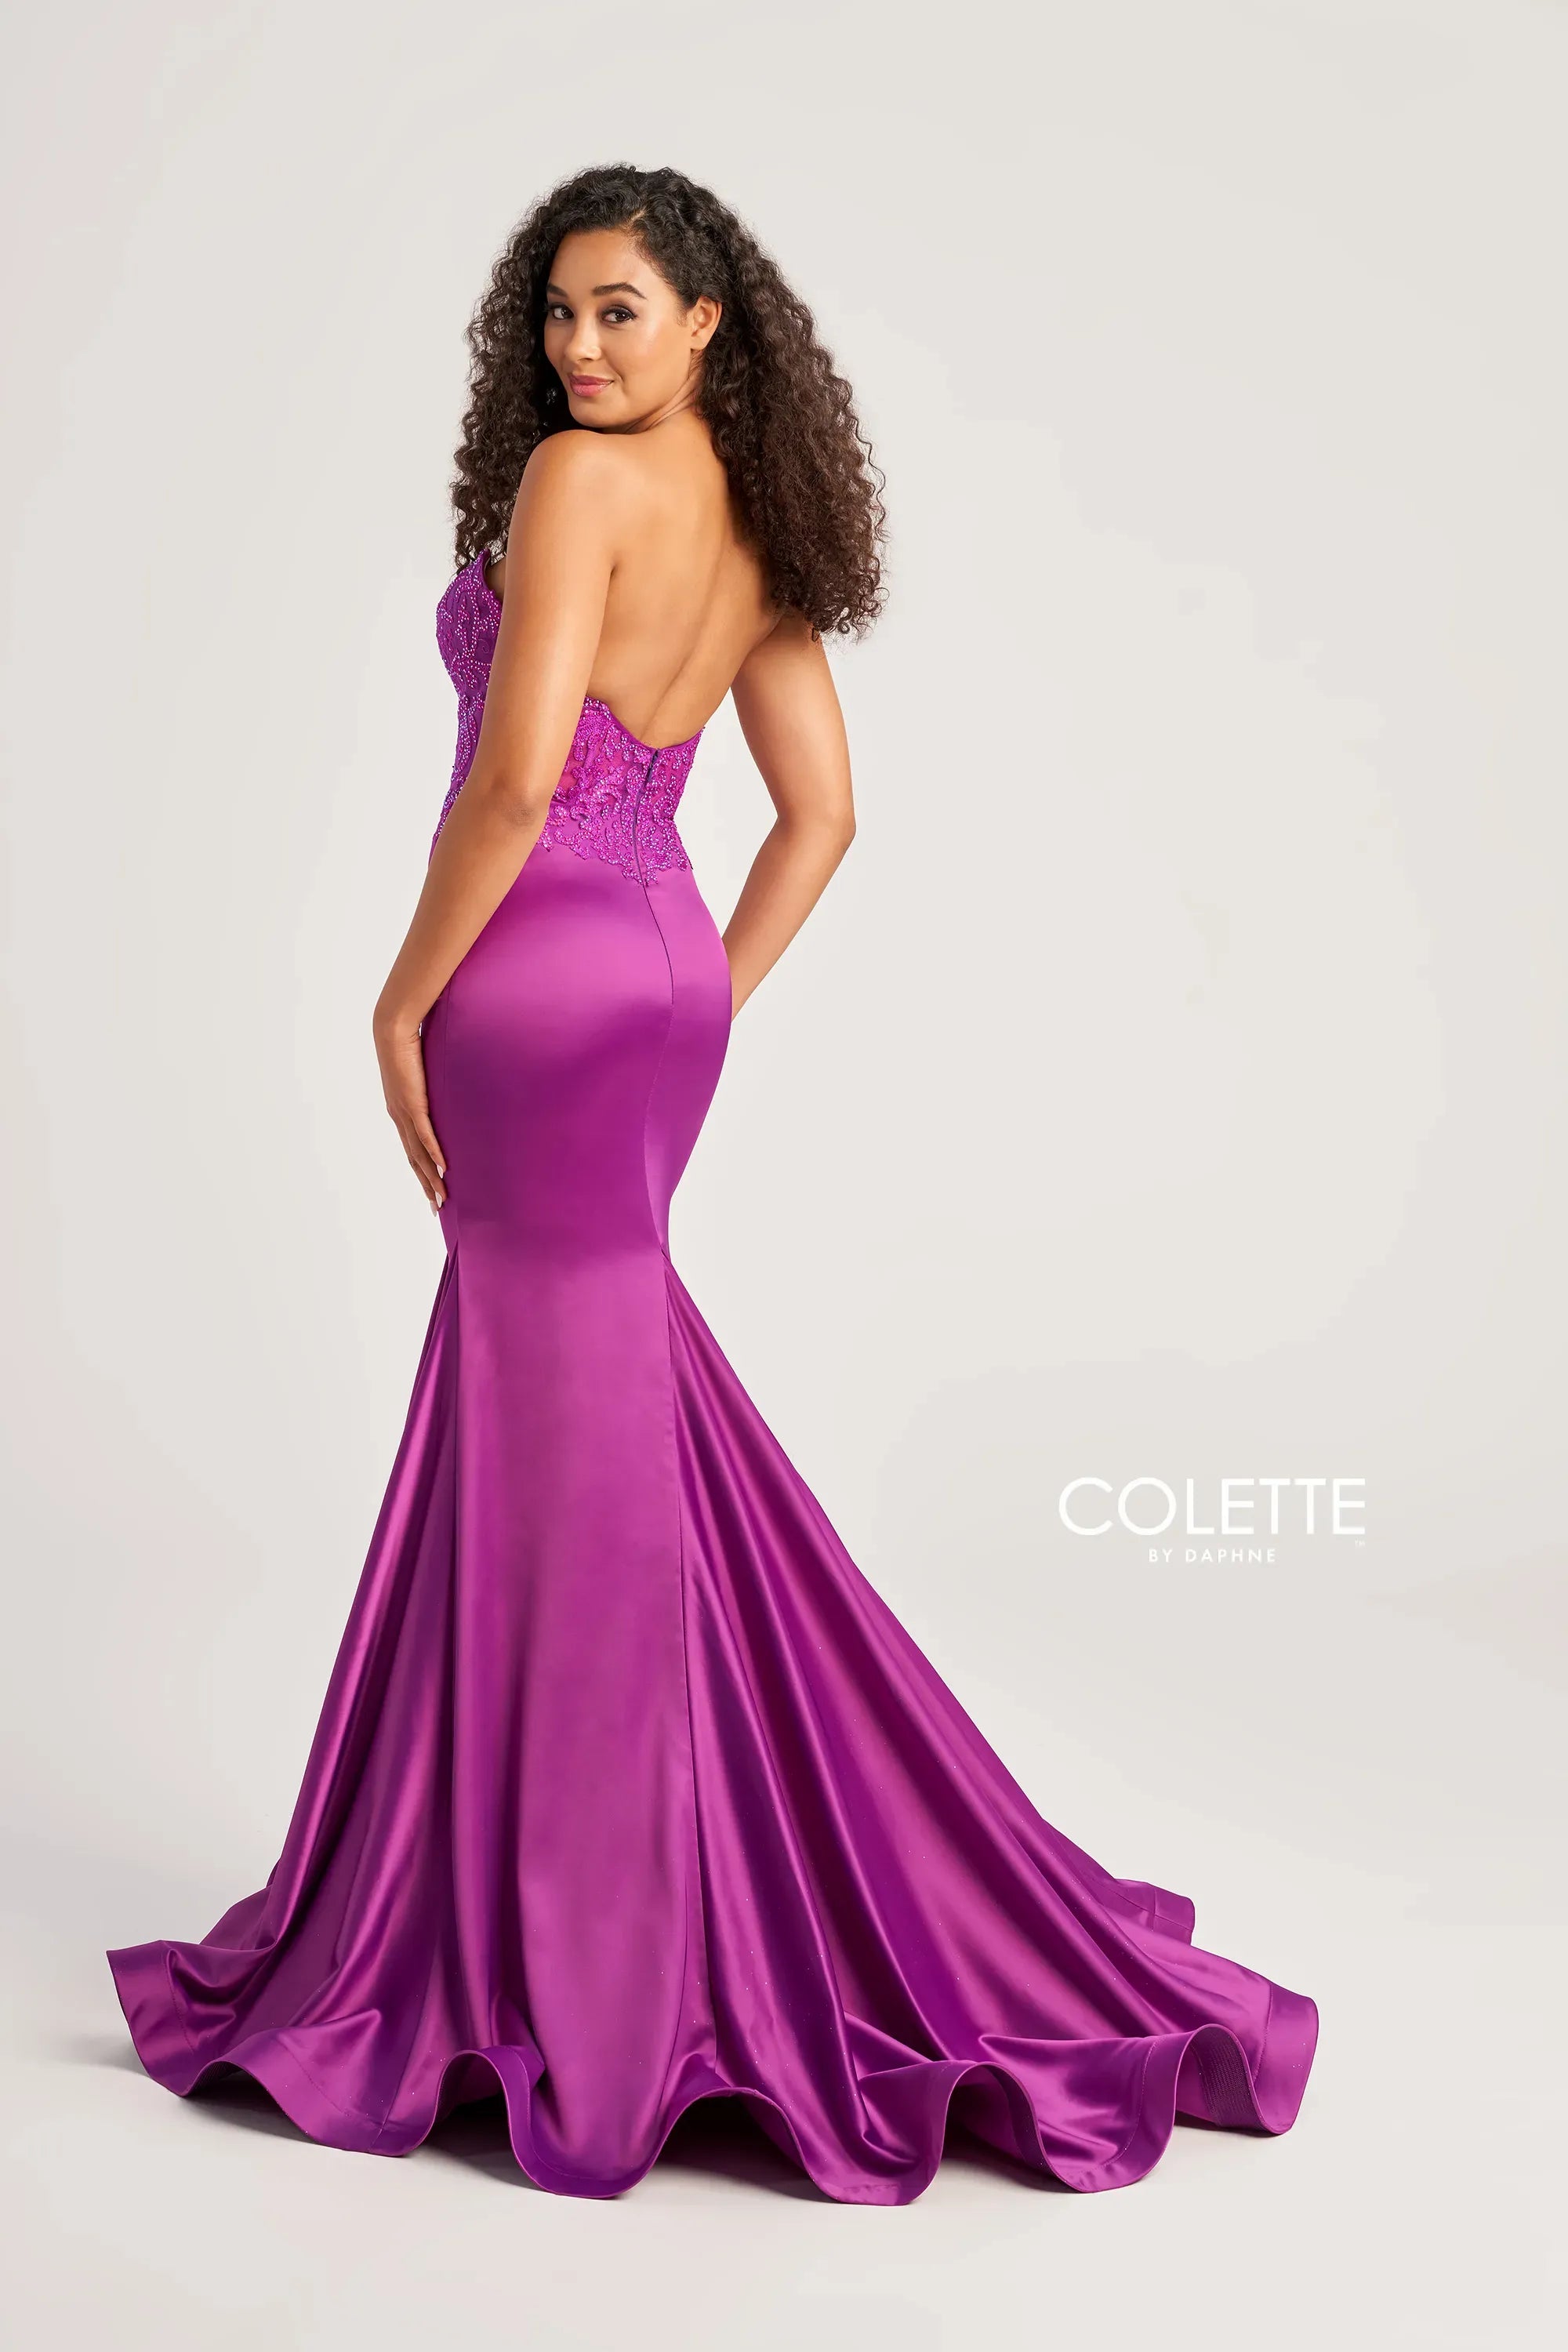 Colette CL5116